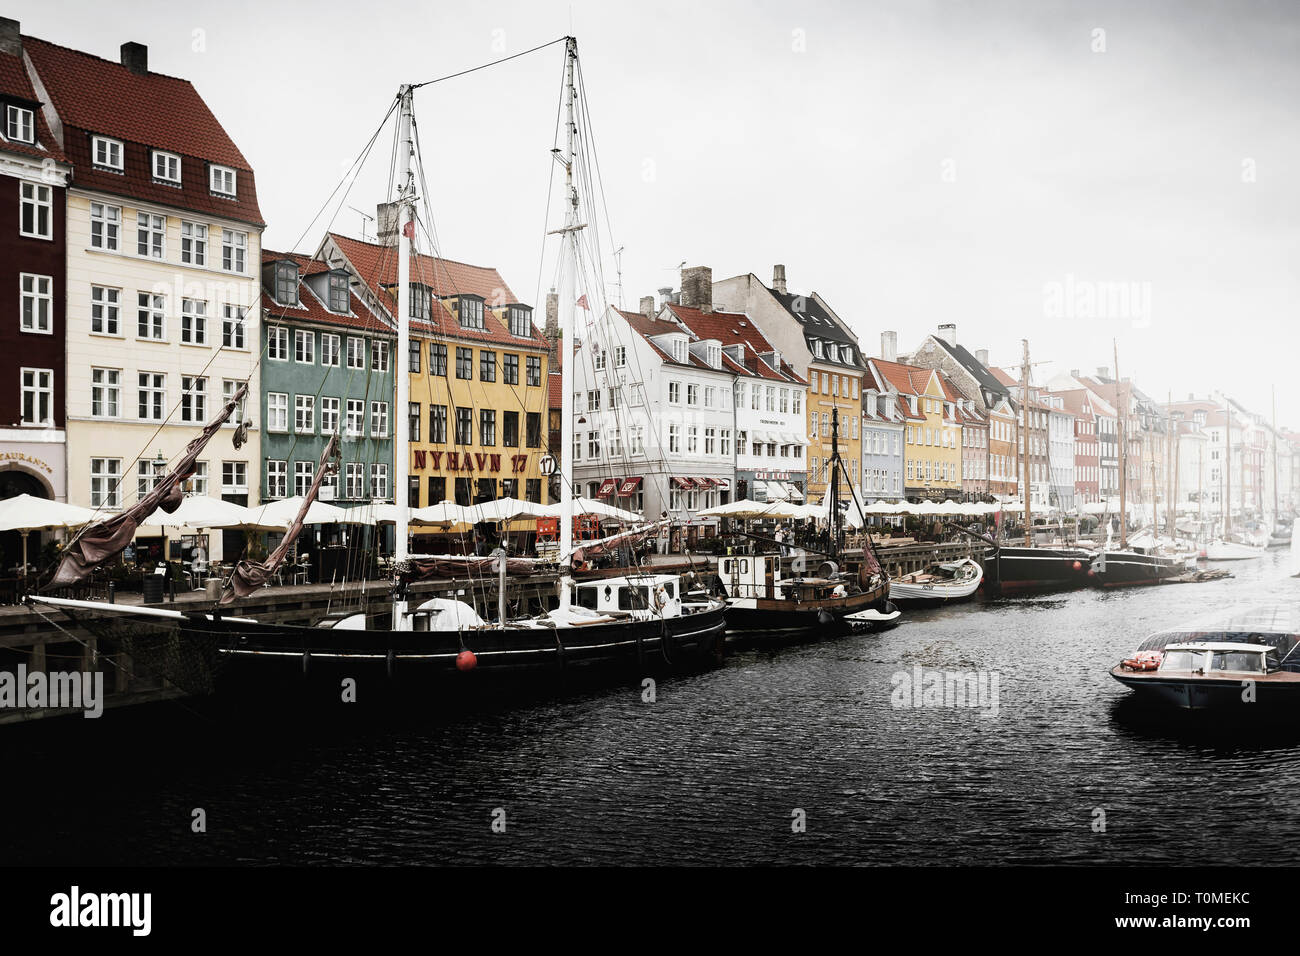 L'architecture historique, Nyhavn, Copenhague, Danemark Banque D'Images